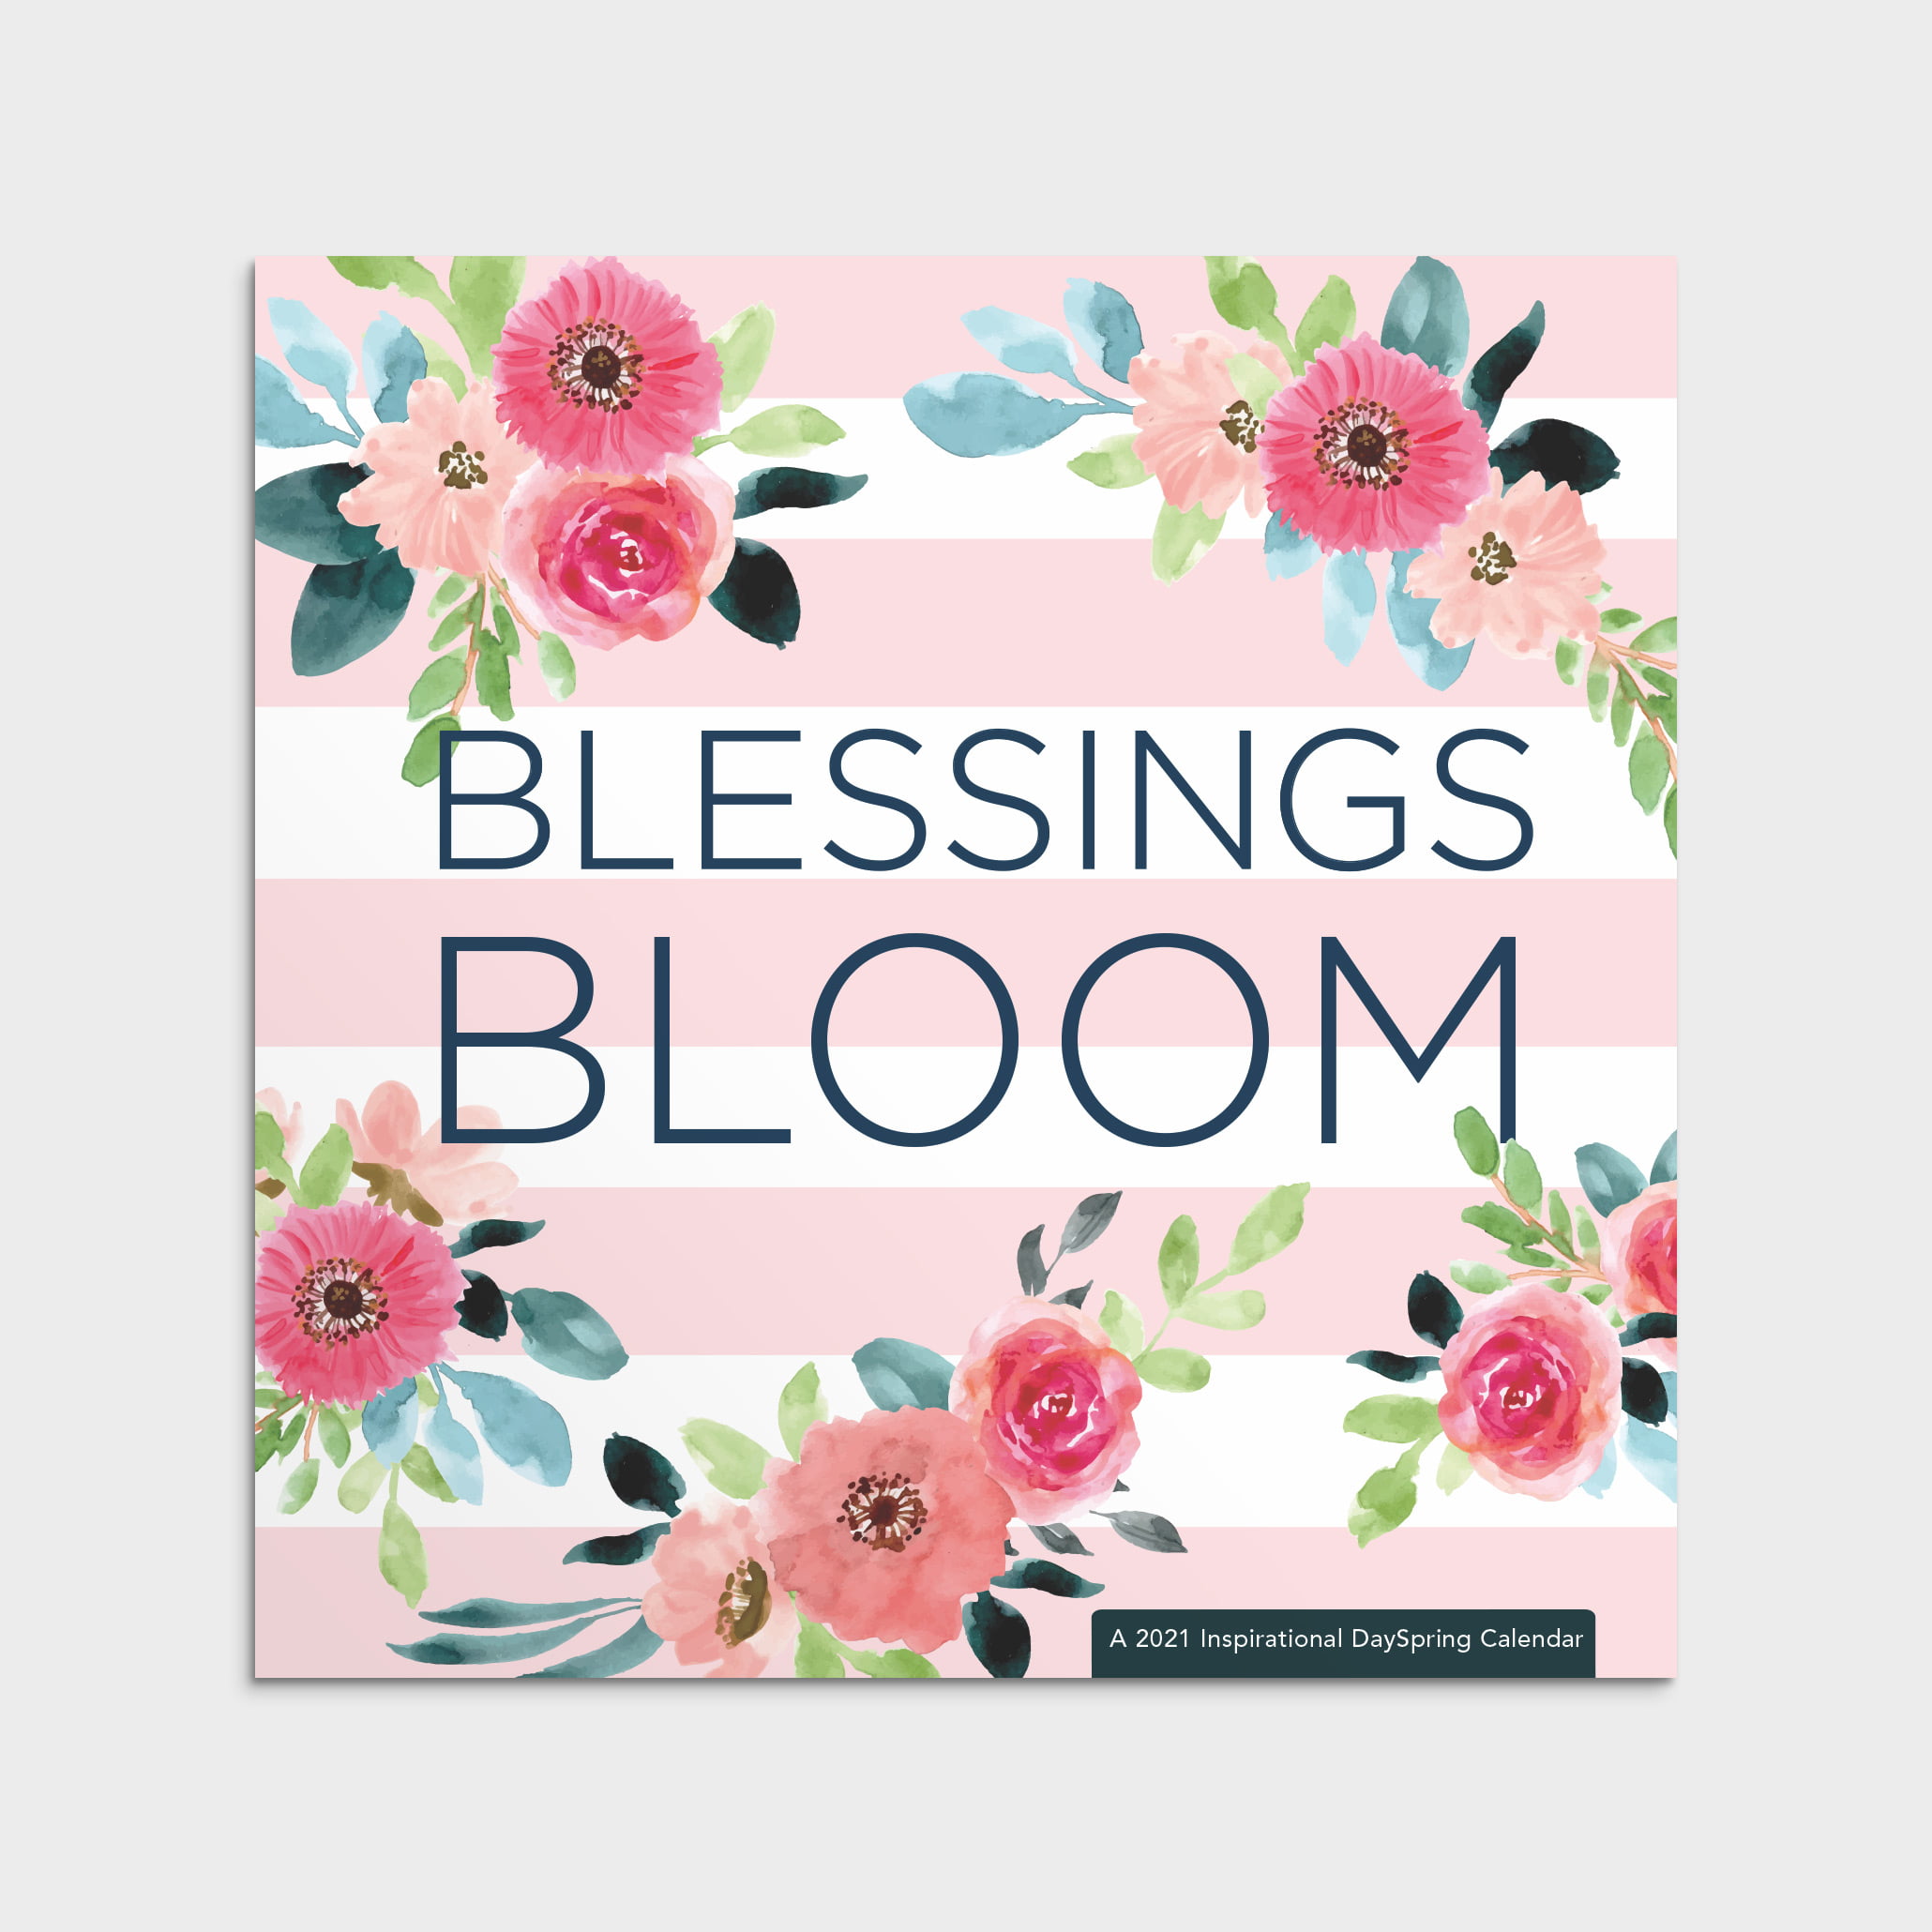 Dayspring 2021 Inspirational Wall Calendar Blessings Bloom 904175388 Walmart Com Walmart Com